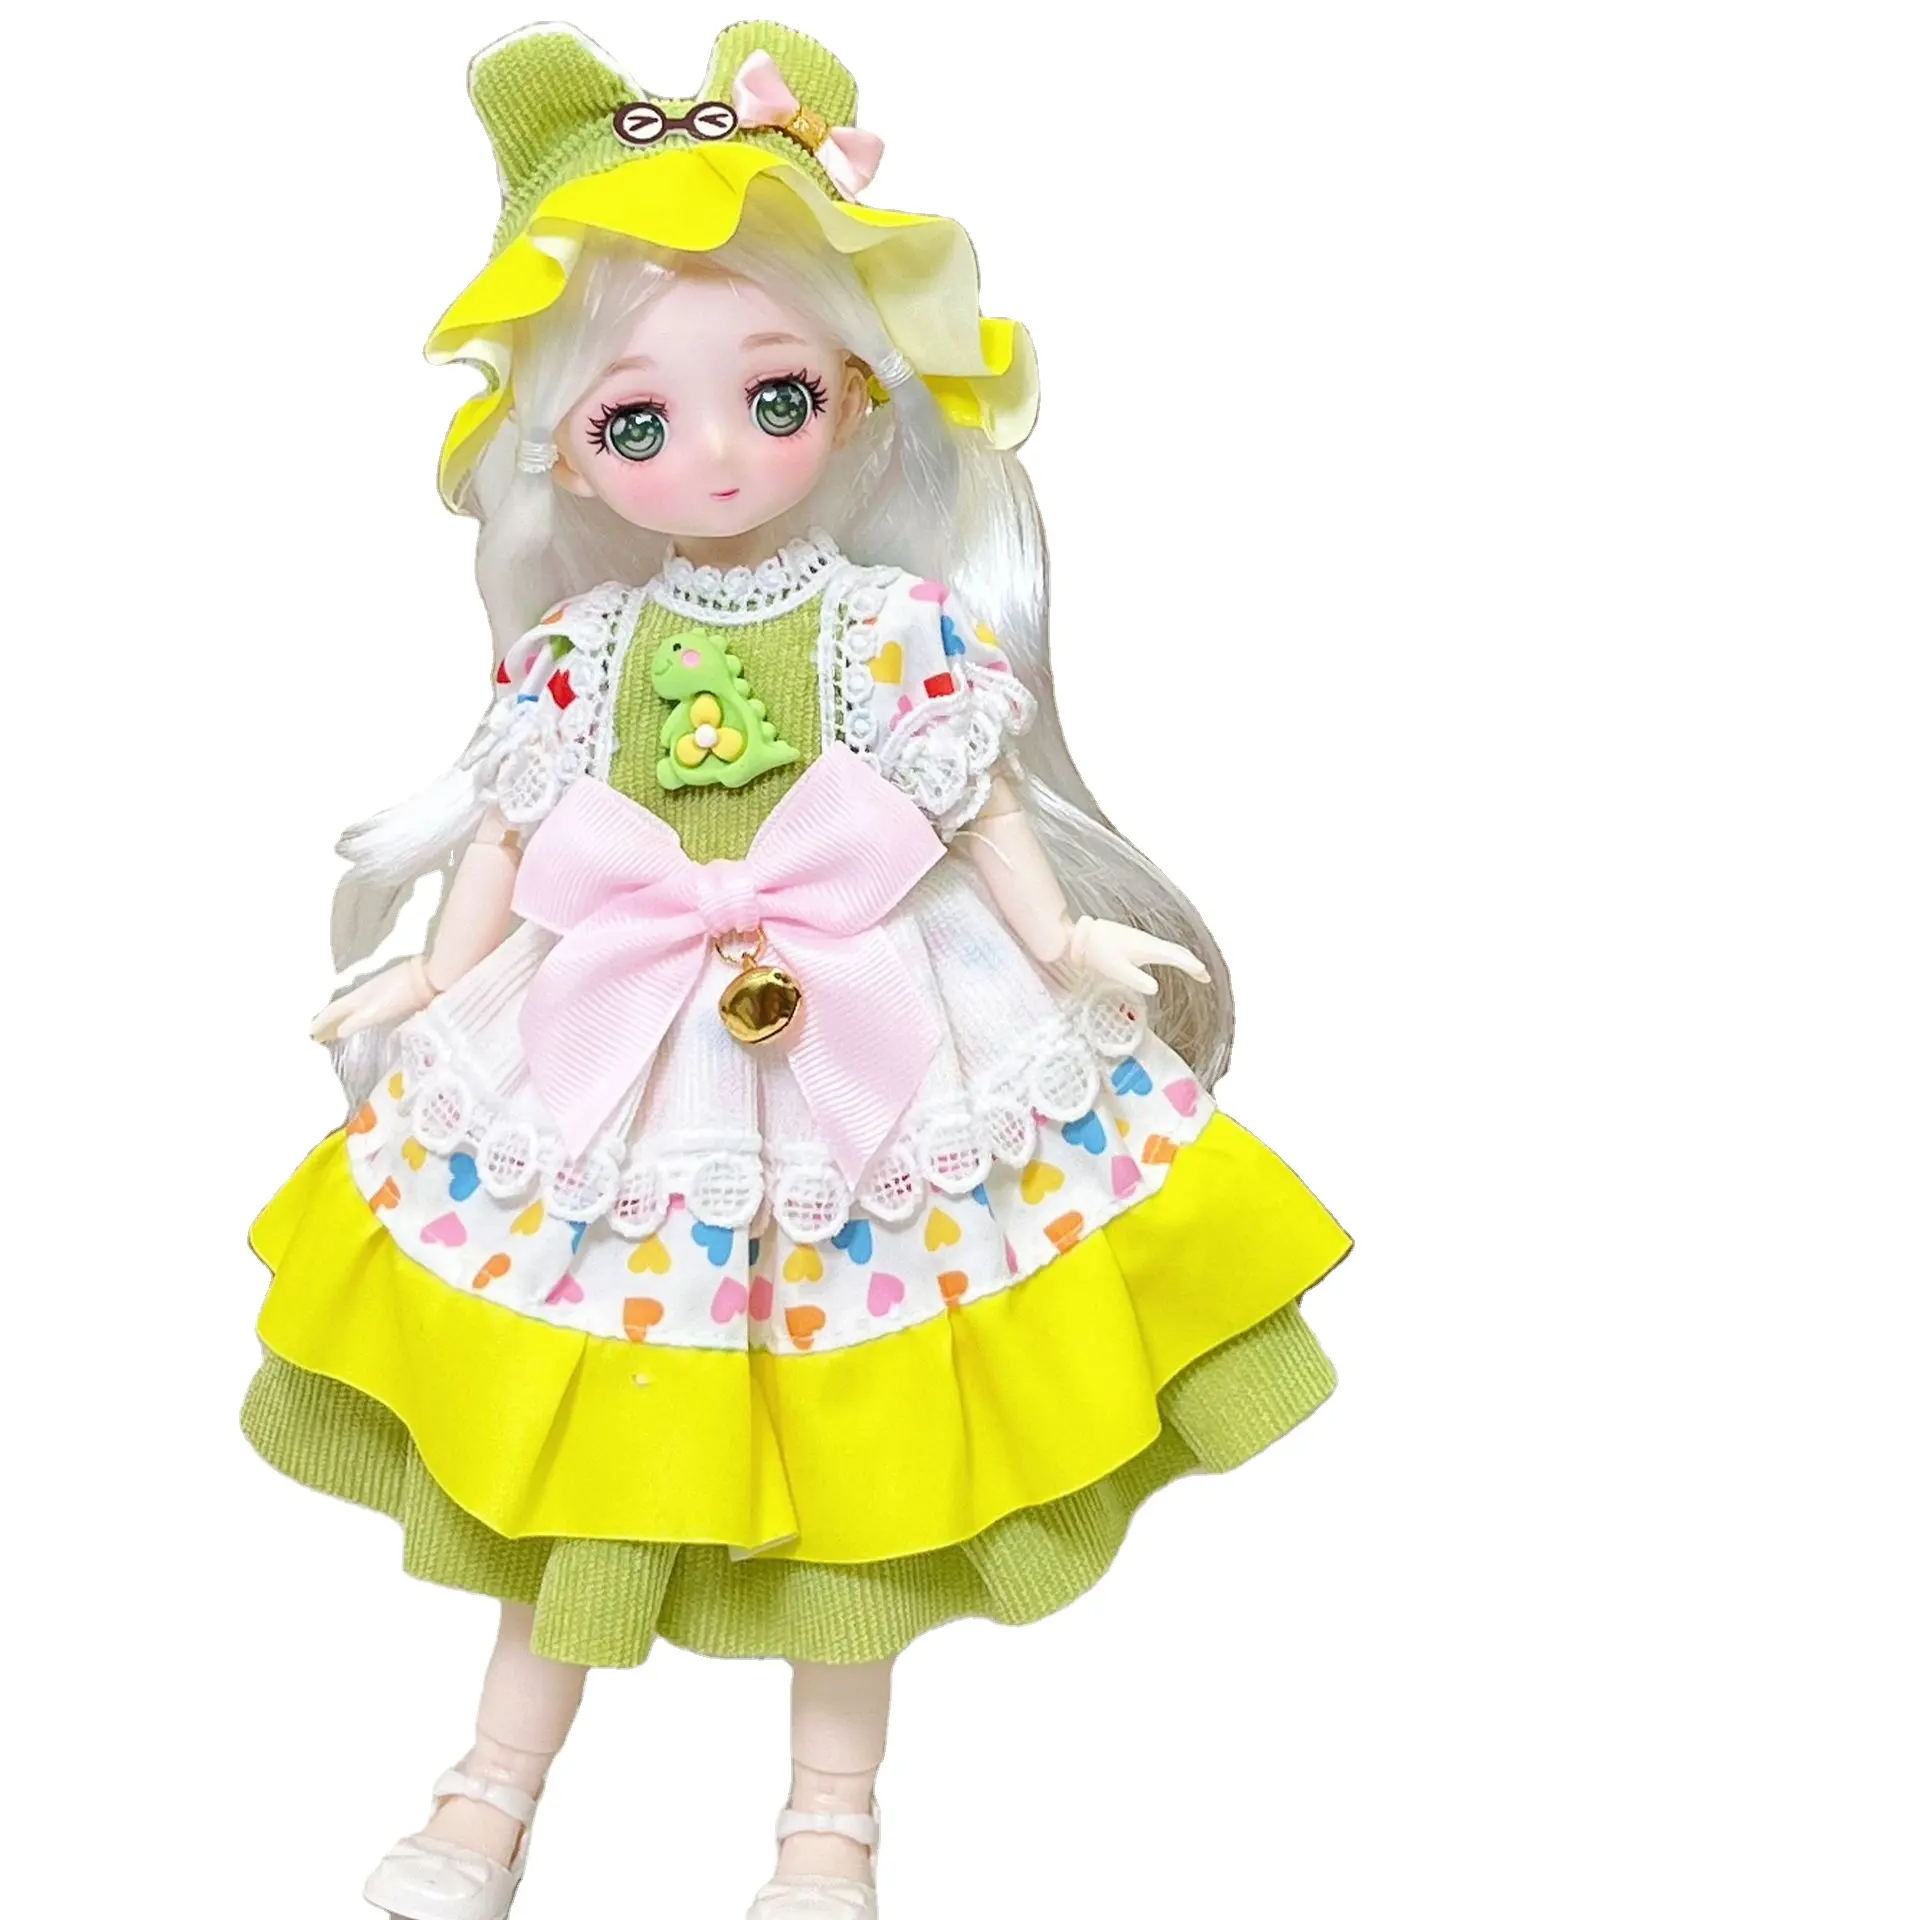 Wholesale cheap exquisite fashion Mannequin doll 30 cm bjd dress-up Lolita princess doll